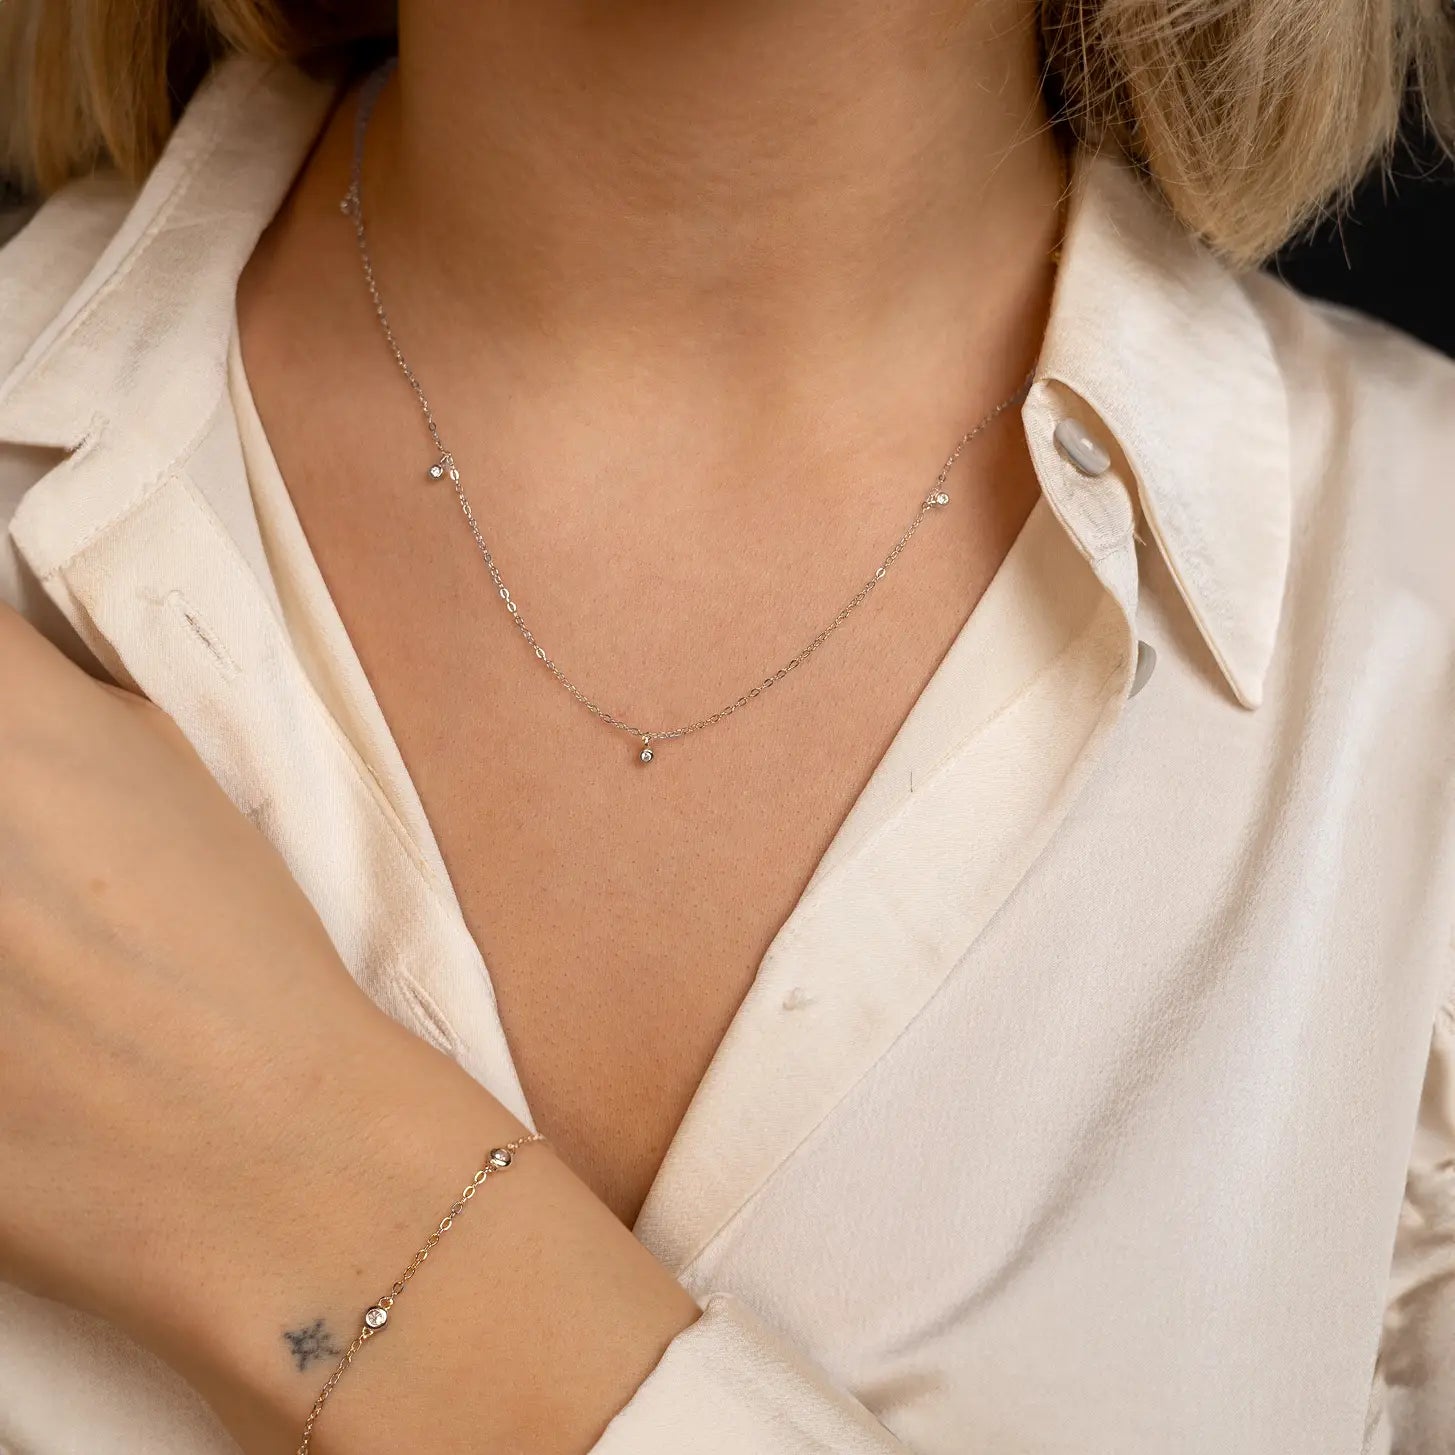 Halskette EMMA | Silber